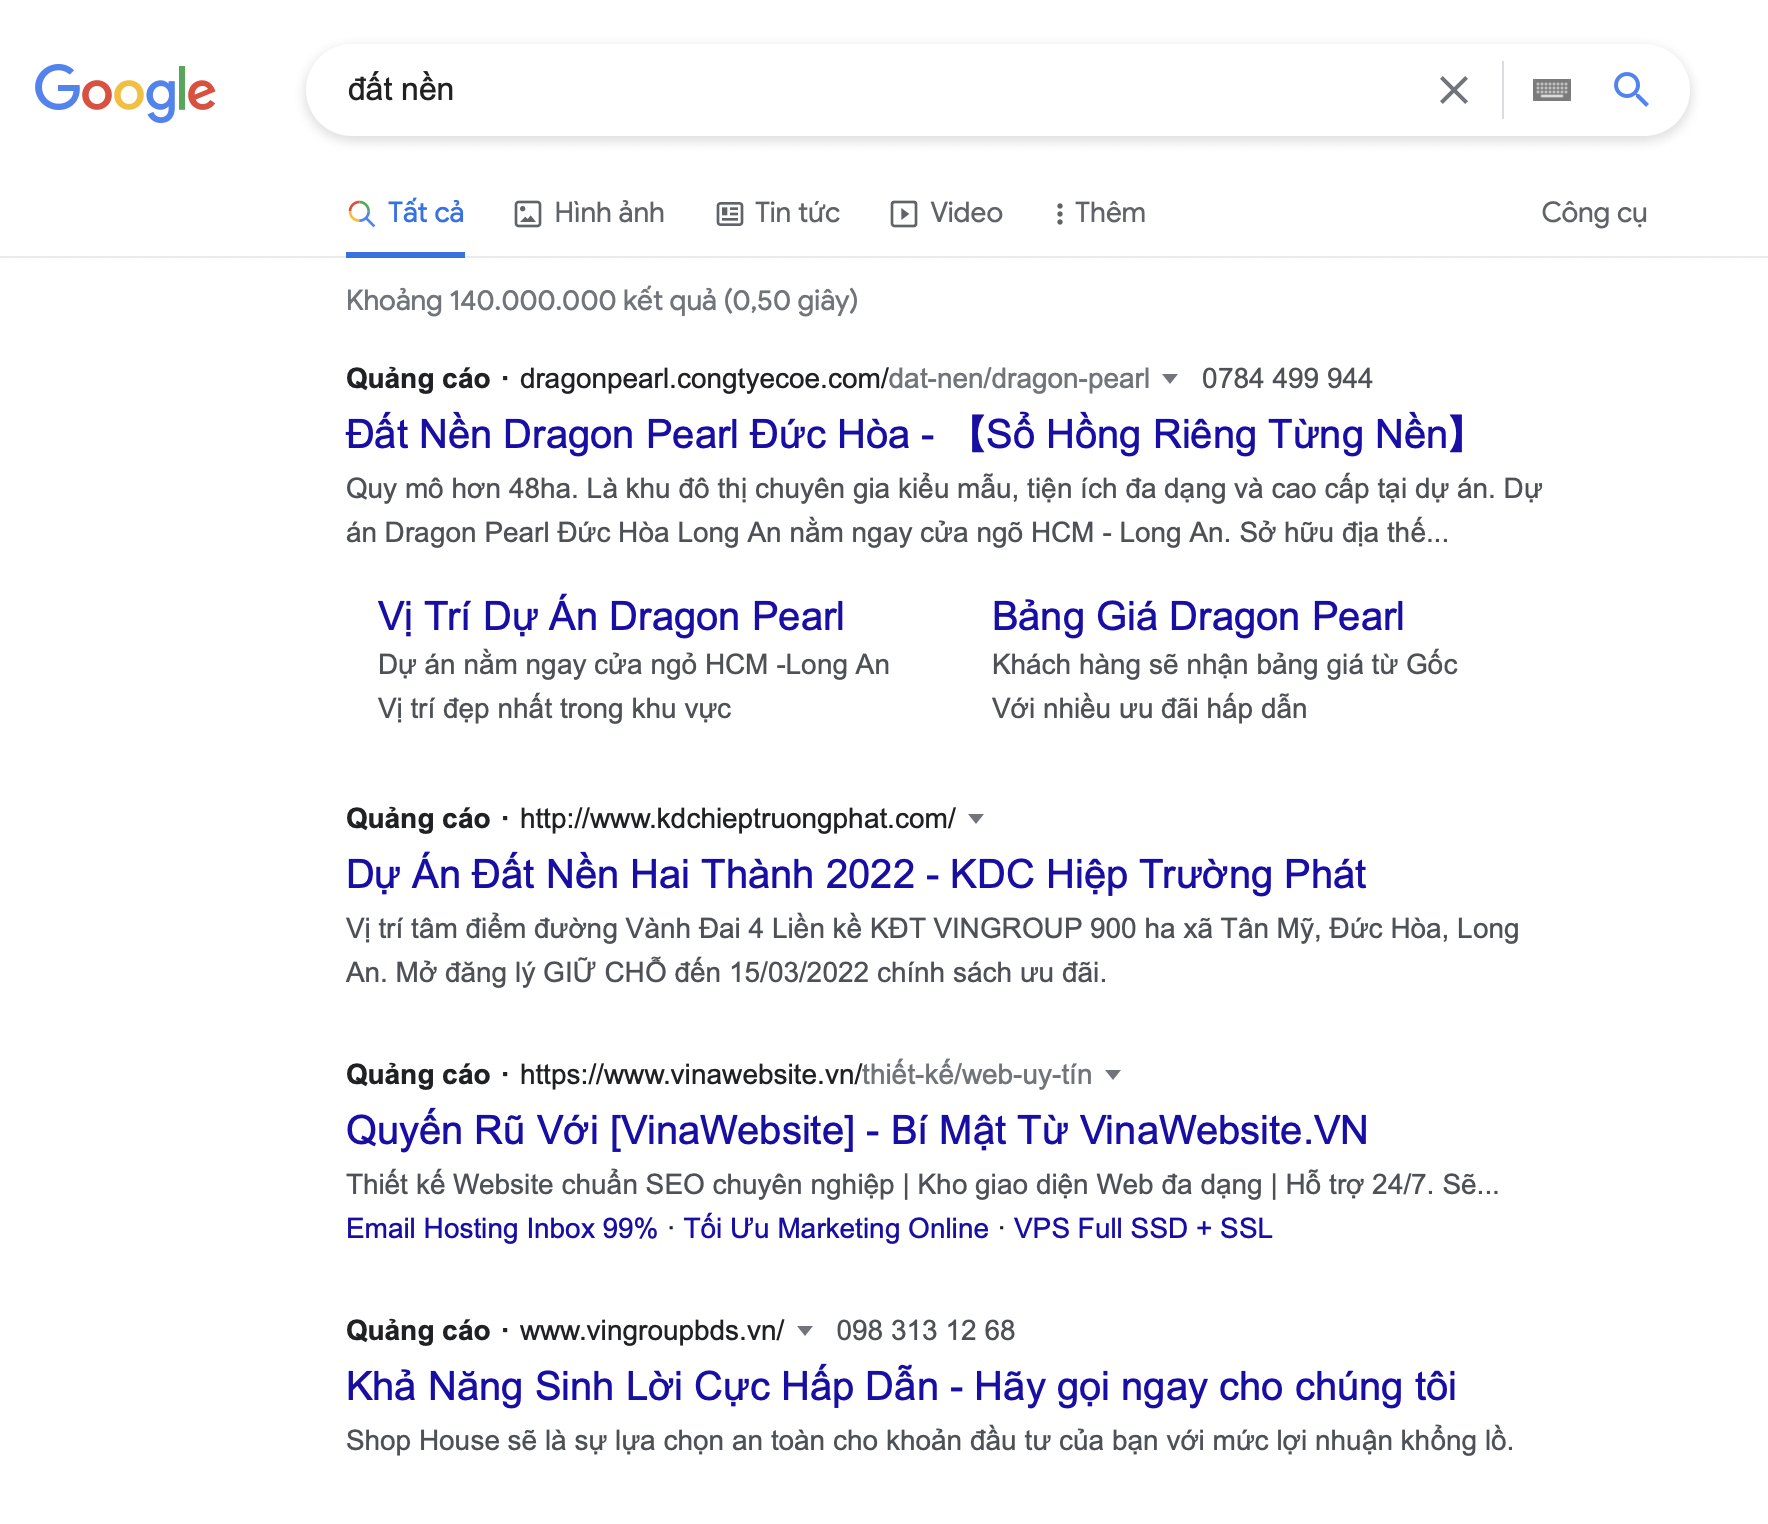 Dịch vụ chạy quảng cáo Google theo loại hình Google Search